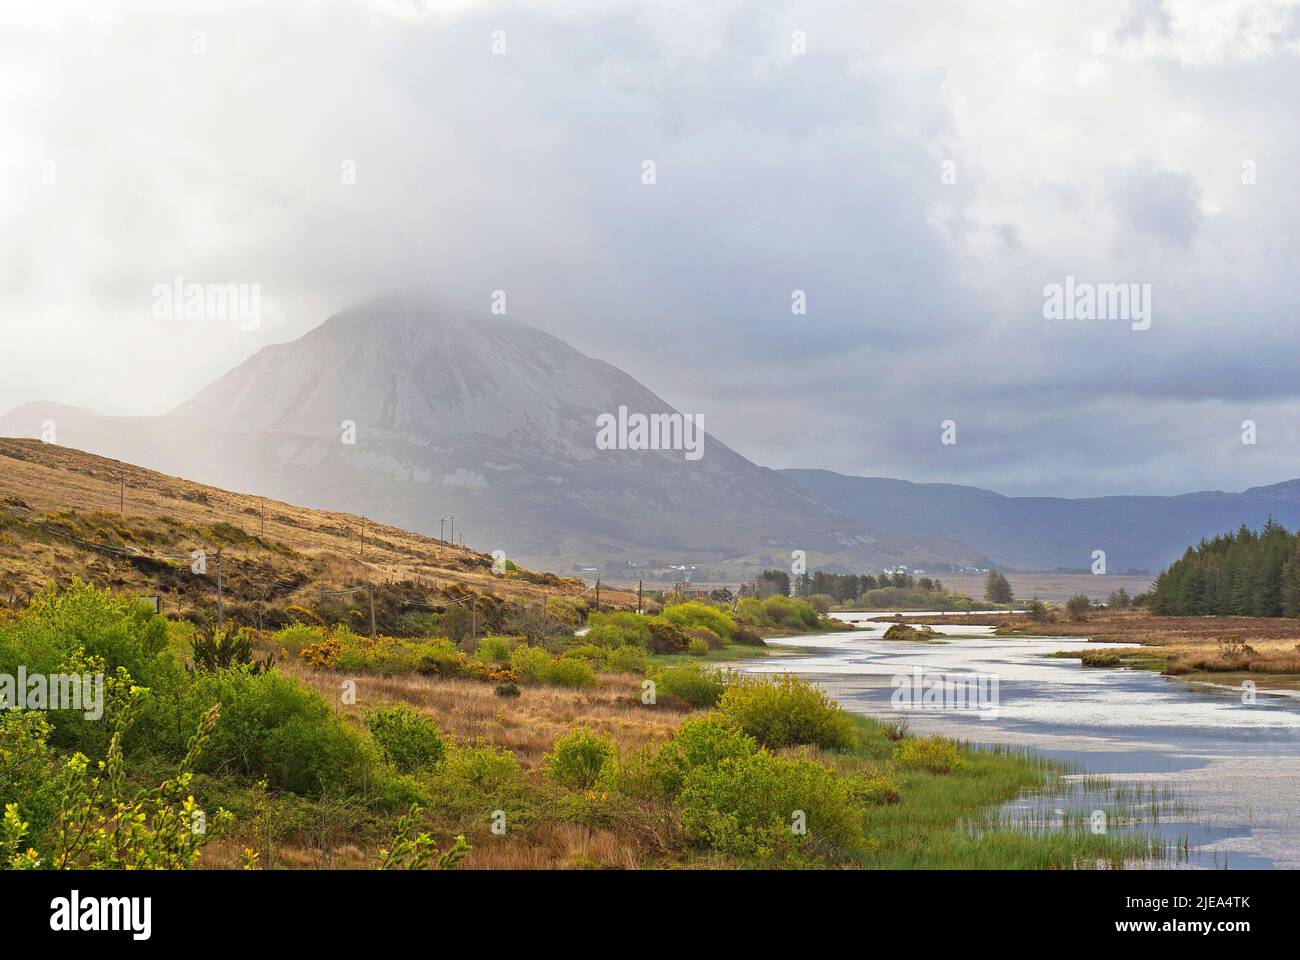 Río Clady y monte Errigal semi cubierto por nubes, Condado de Donegal, Irlanda Foto de stock